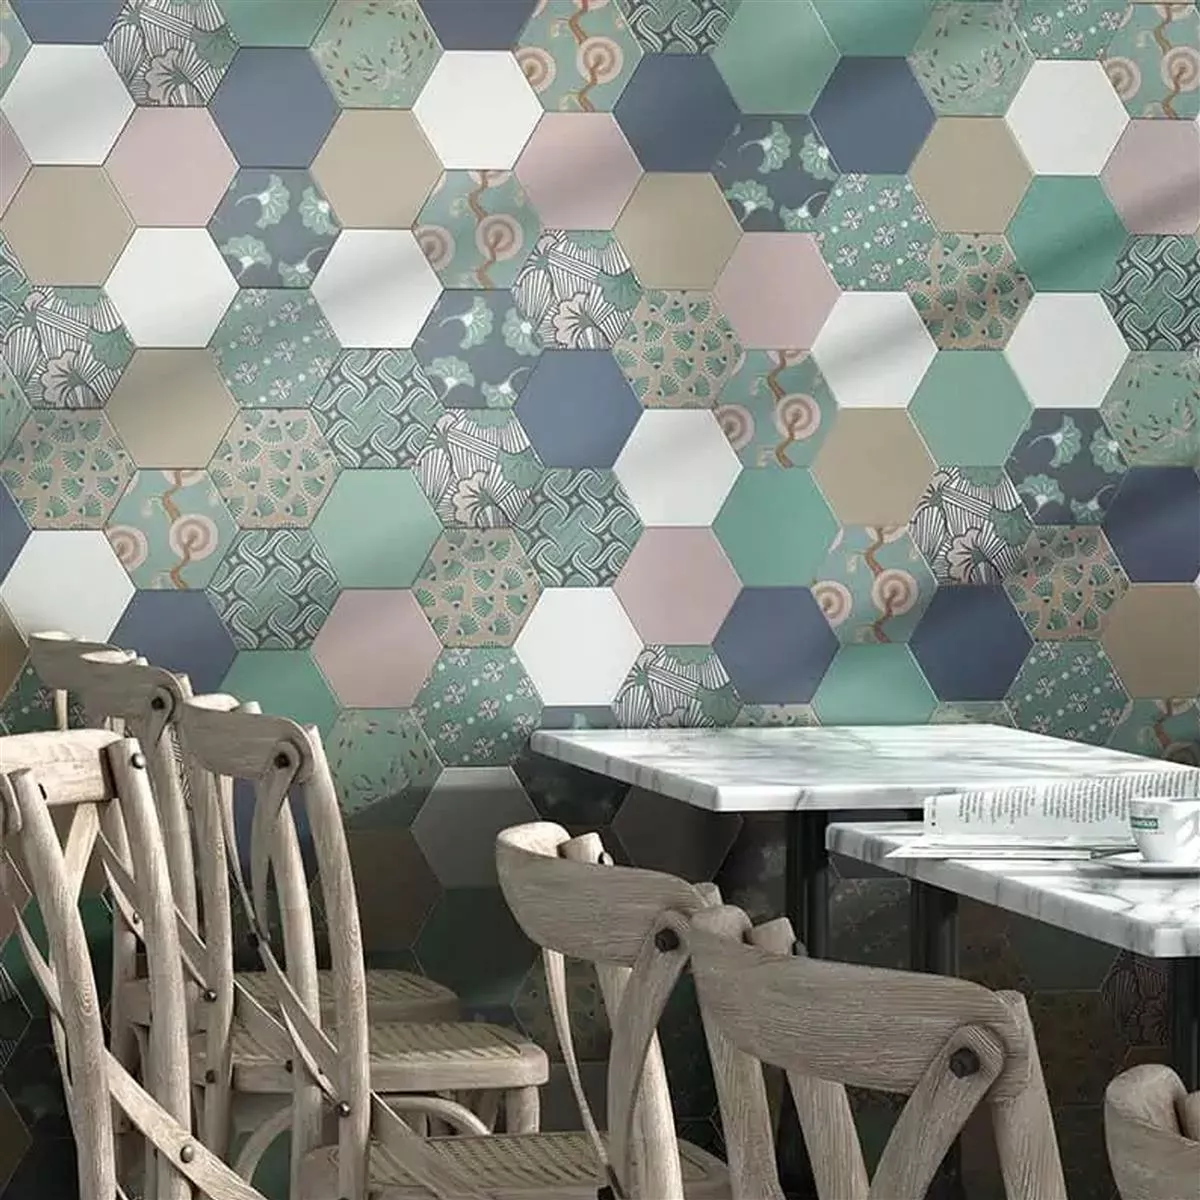 Porcellanato Fliser Modena Hexagon Uni Hvid Hexagon